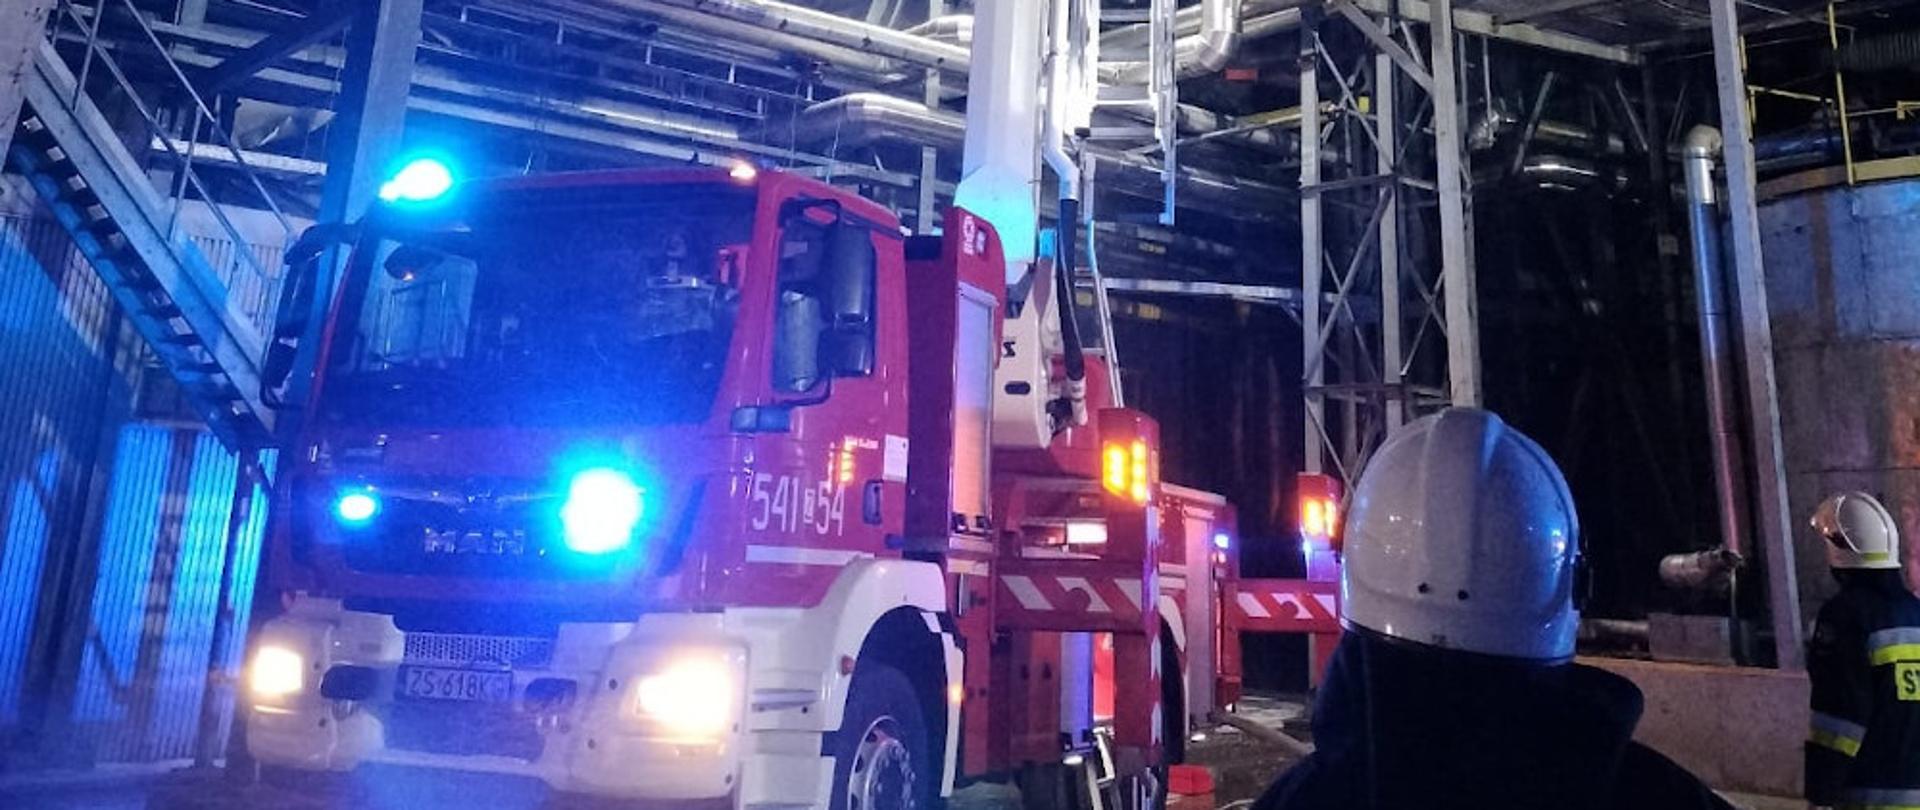 Pożar kanału technologicznego - strażacy przy pomocy podnośnika hydraulicznego podają środek gaśniczy na kanał technologiczny na wysokości.